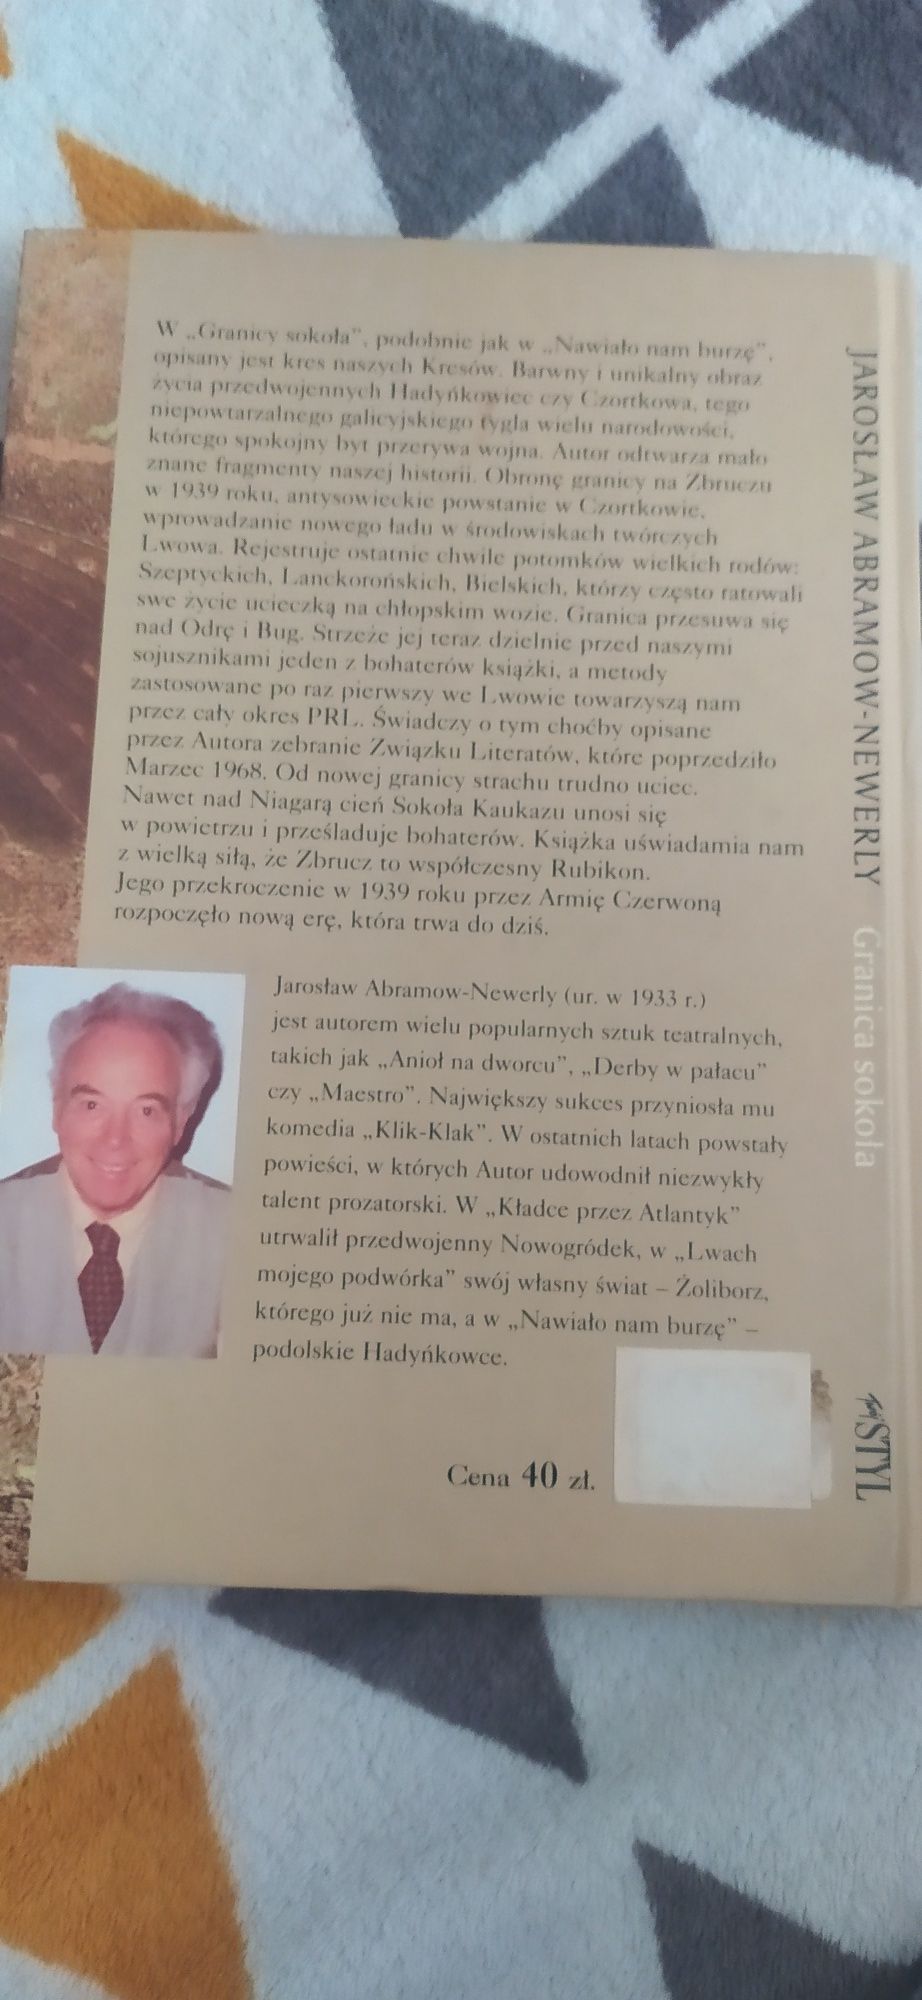 Jarosław Abramow-Newerly Granica Sokoła